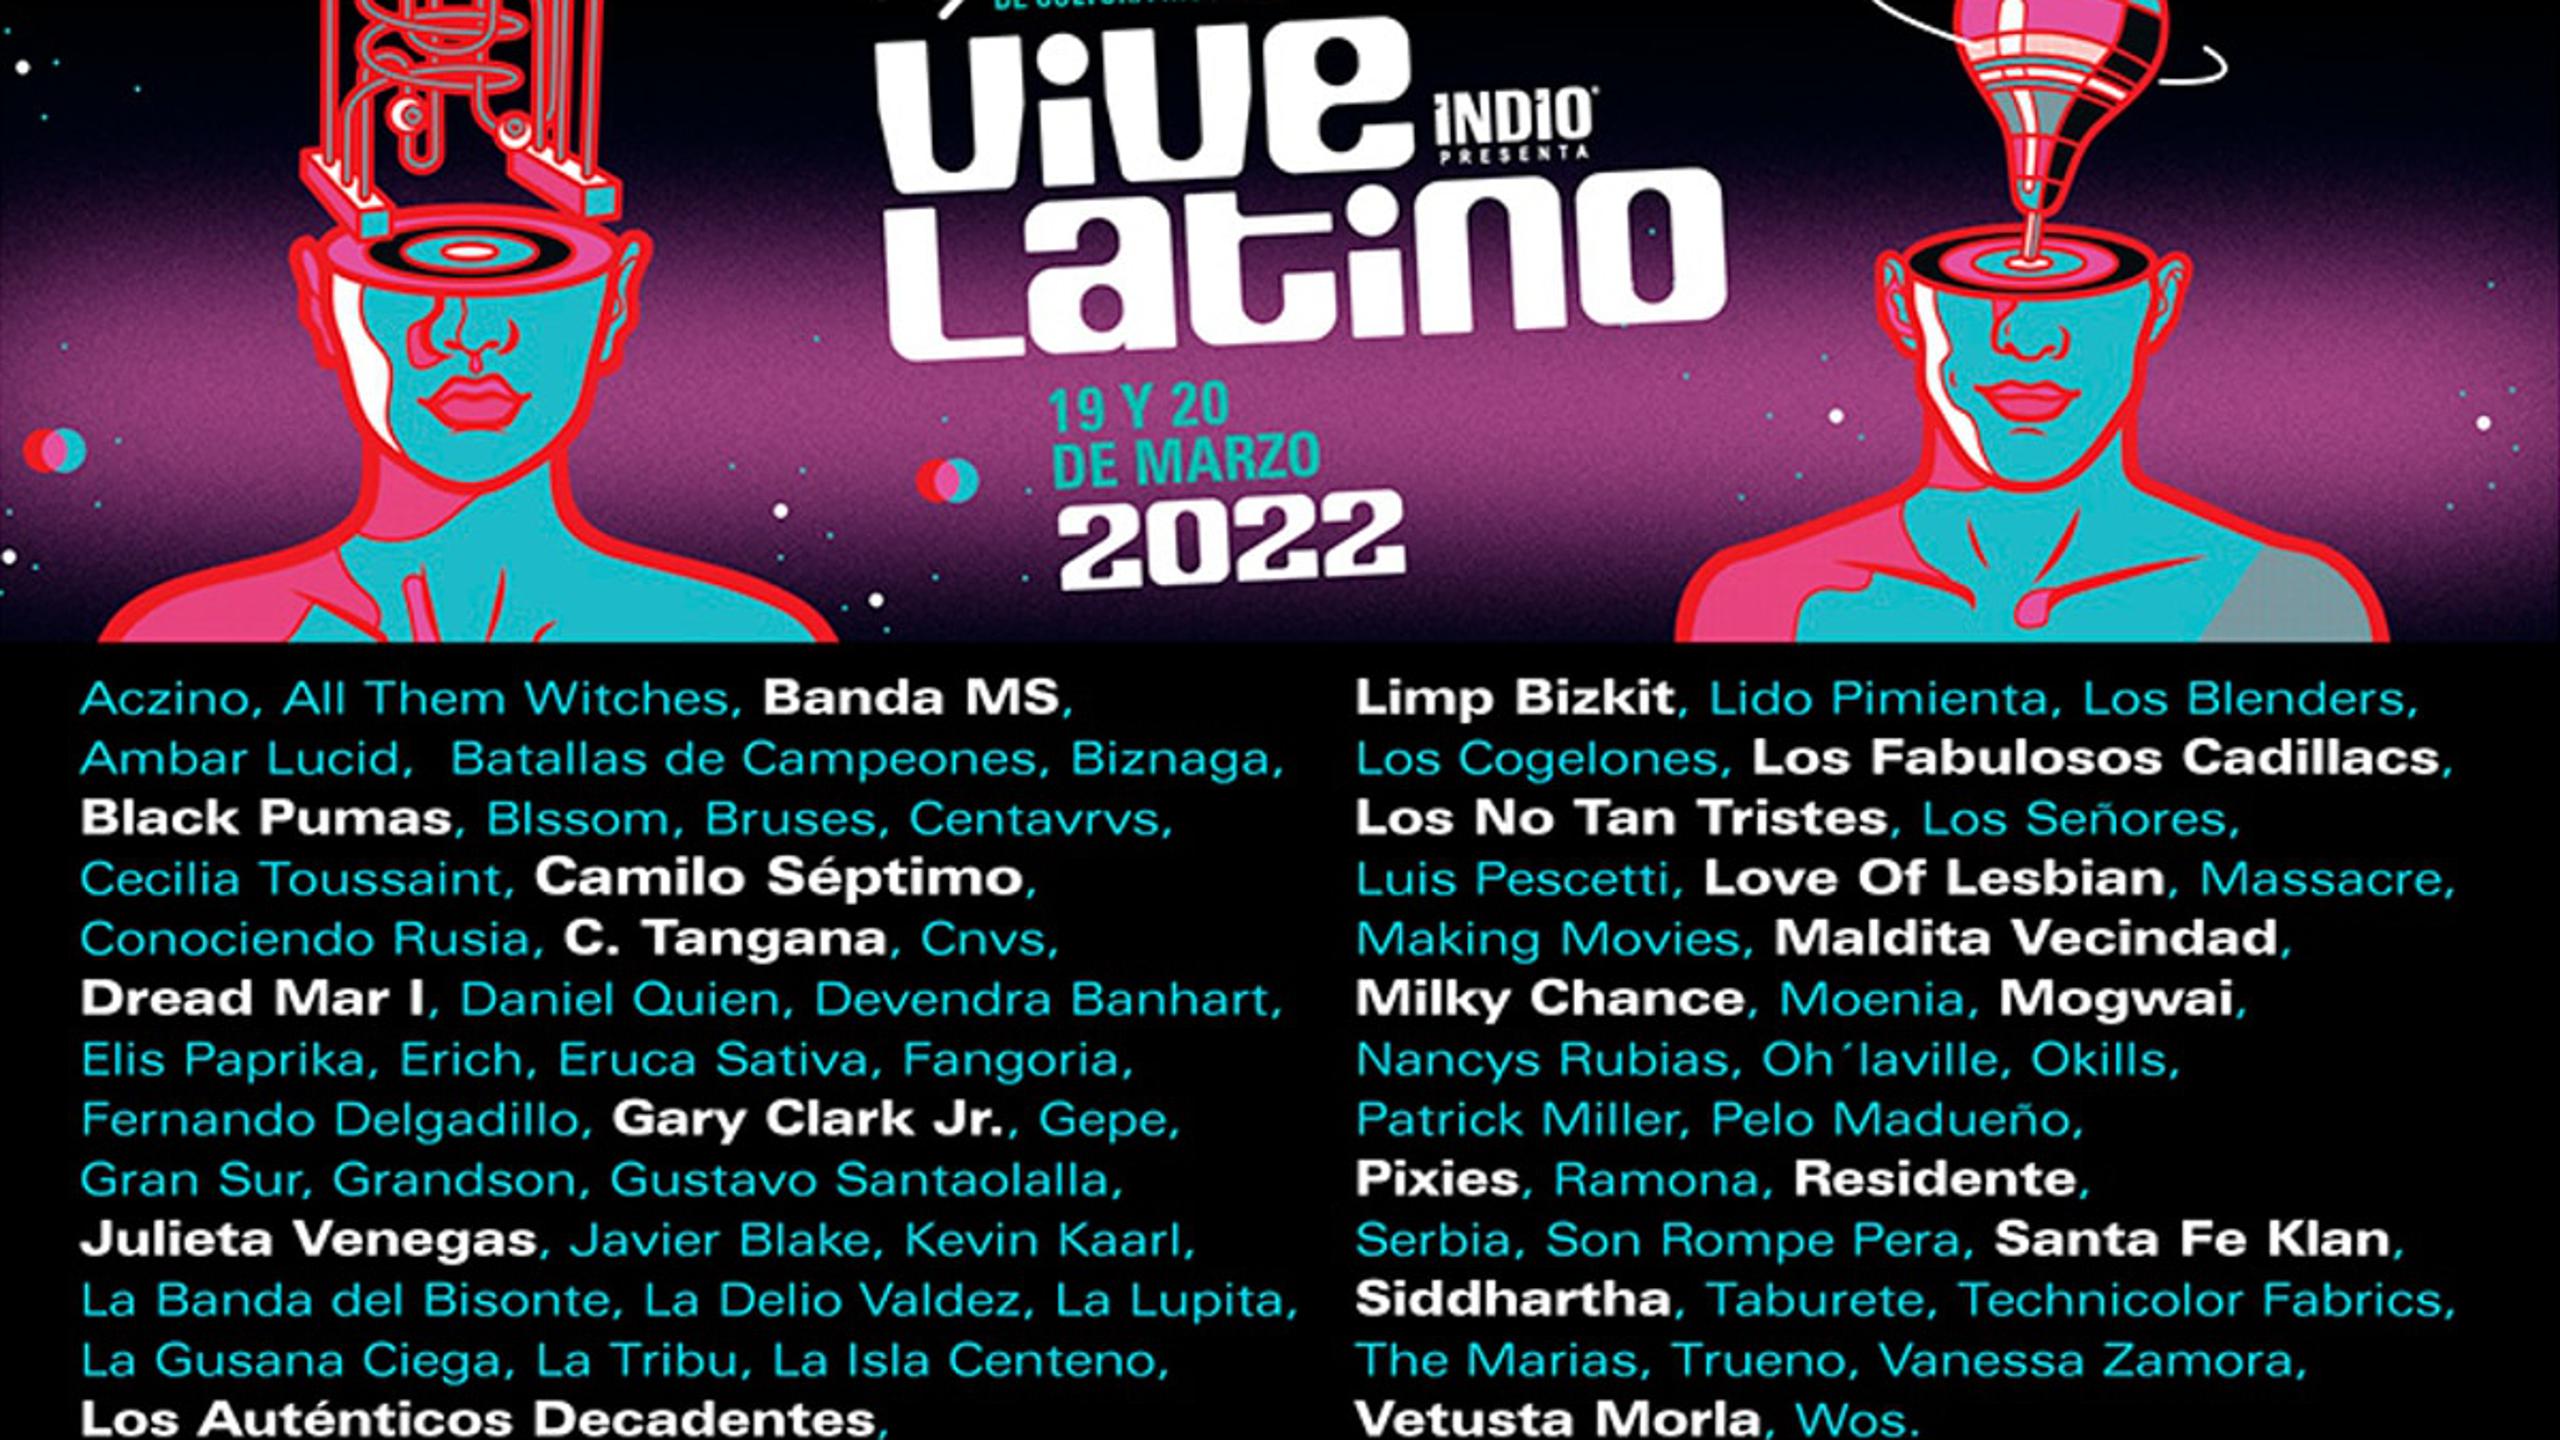 Vive Latino 2022 1636972617.3984303.2560x1440 